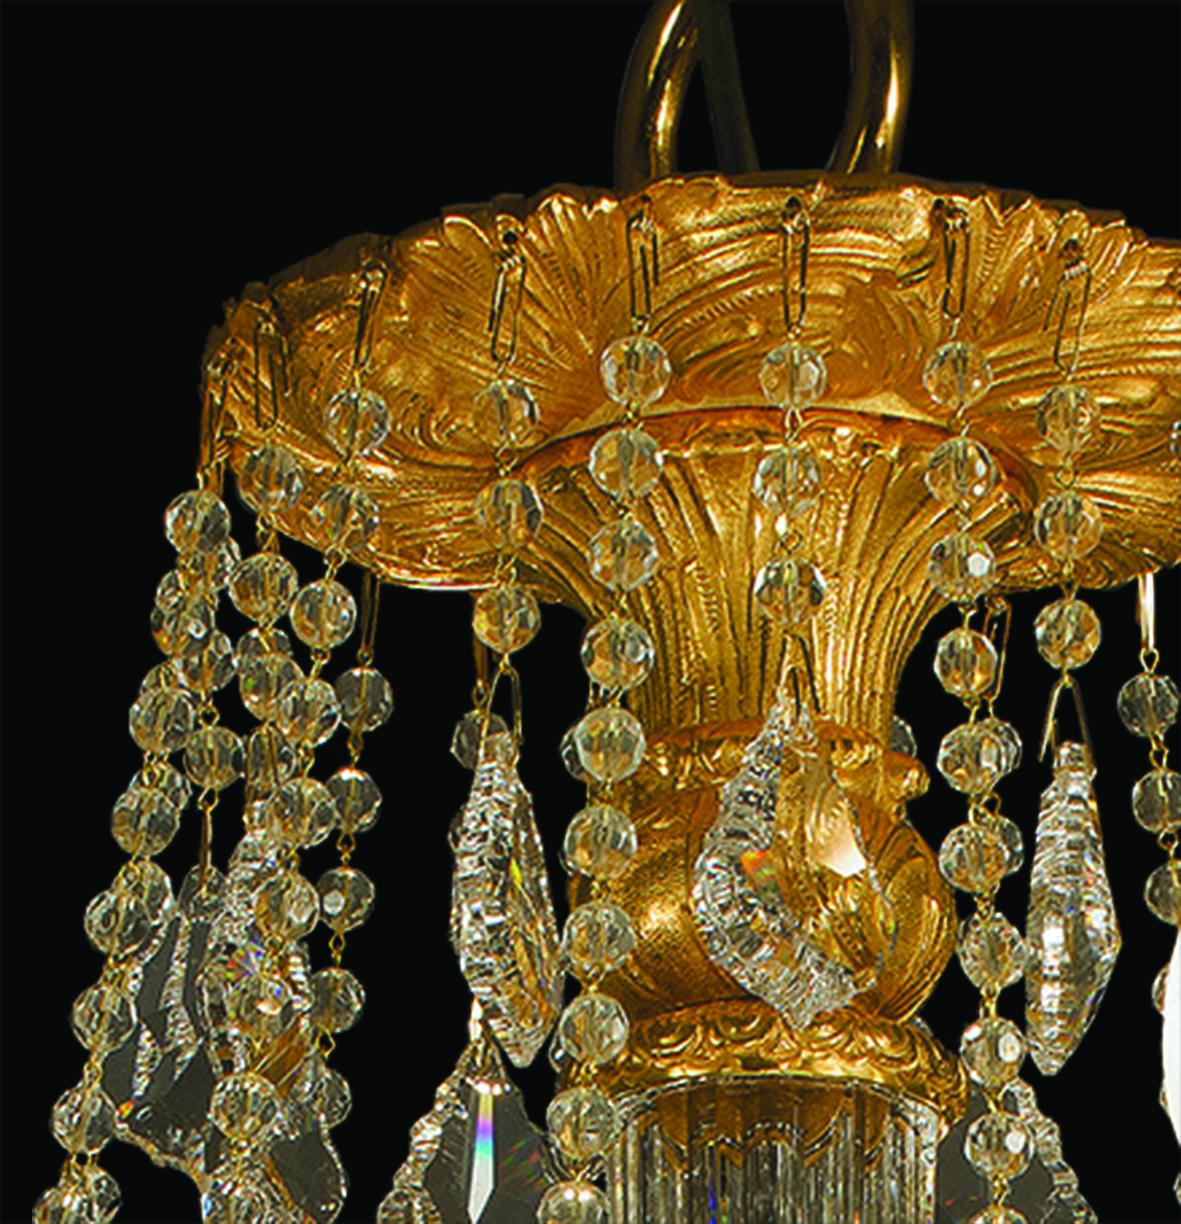 Lustre 12 Lumières en cristal clair et bronze patiné or. 
Les pièces en cristal sont sculptées à la main. Chaque objet est fabriqué à la main et le soin apporté à chaque détail rend chaque objet unique en son genre. Le style de ce lustre est une